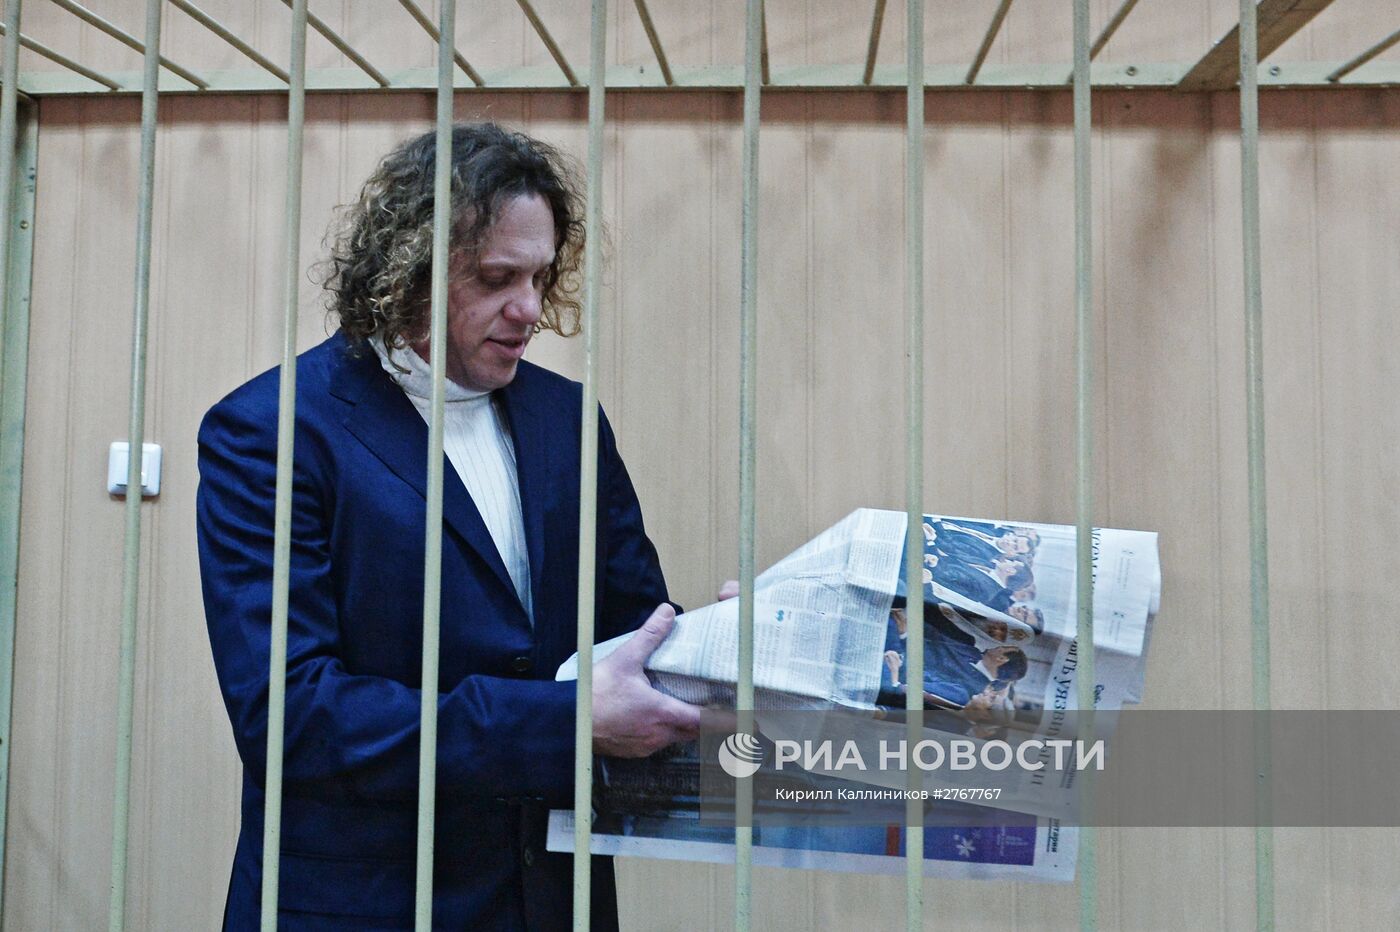 Рассмотрение вопроса о продлении срока ареста бизнесмену Сергею Полонскому